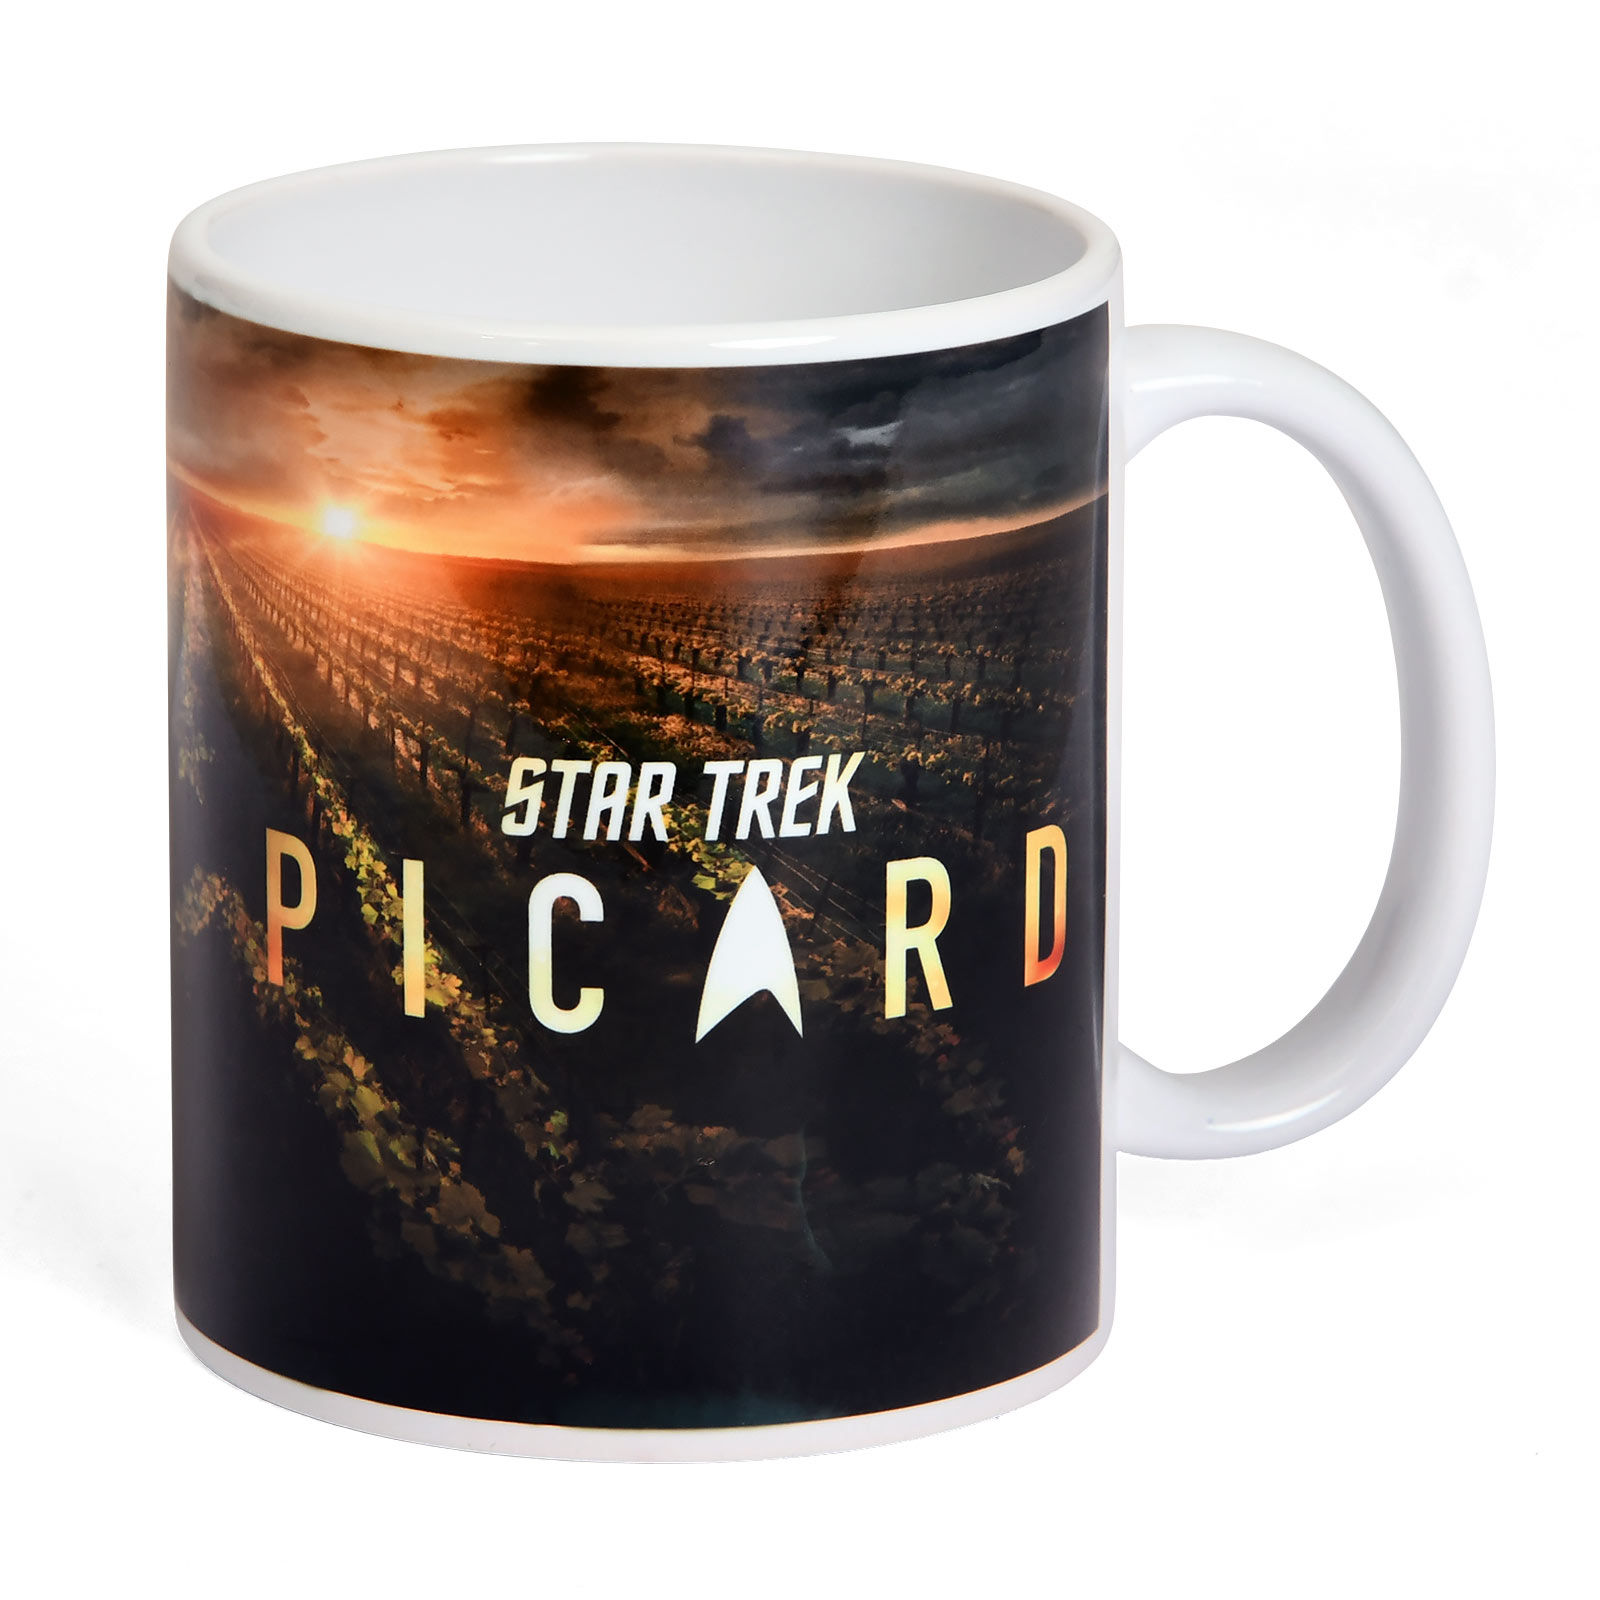 Star Trek - Picard Chateau Tasse